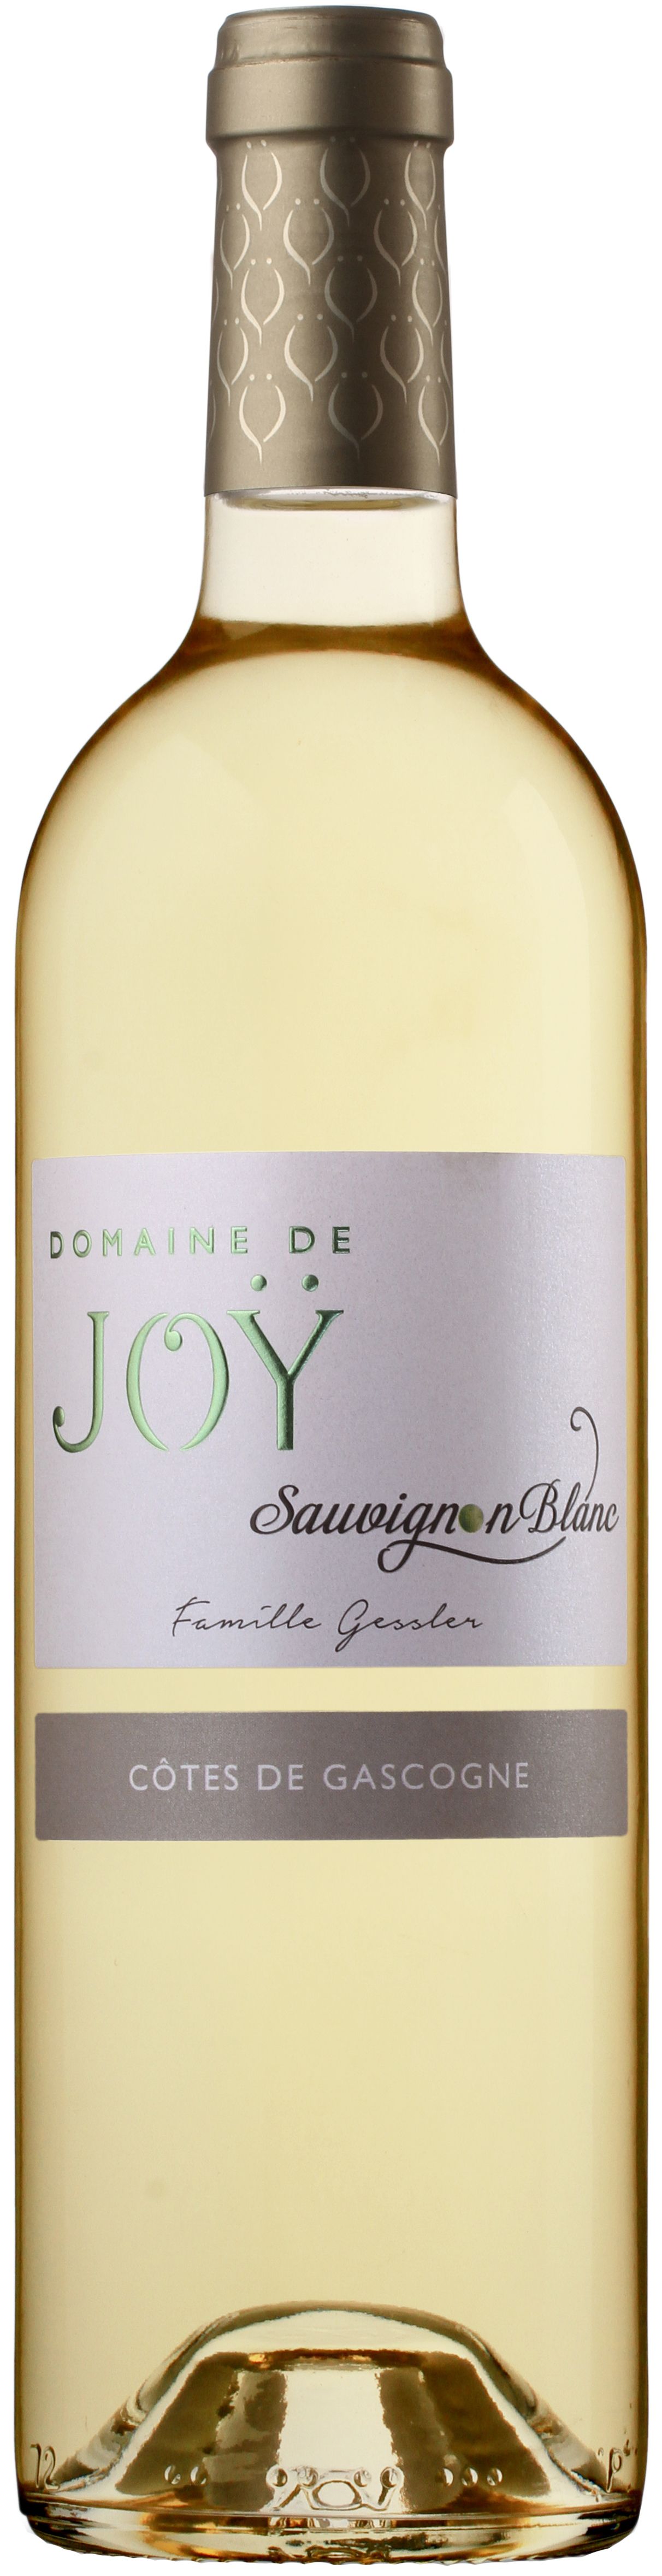 Domaine De Joy, Sauvignon Blanc, 2018